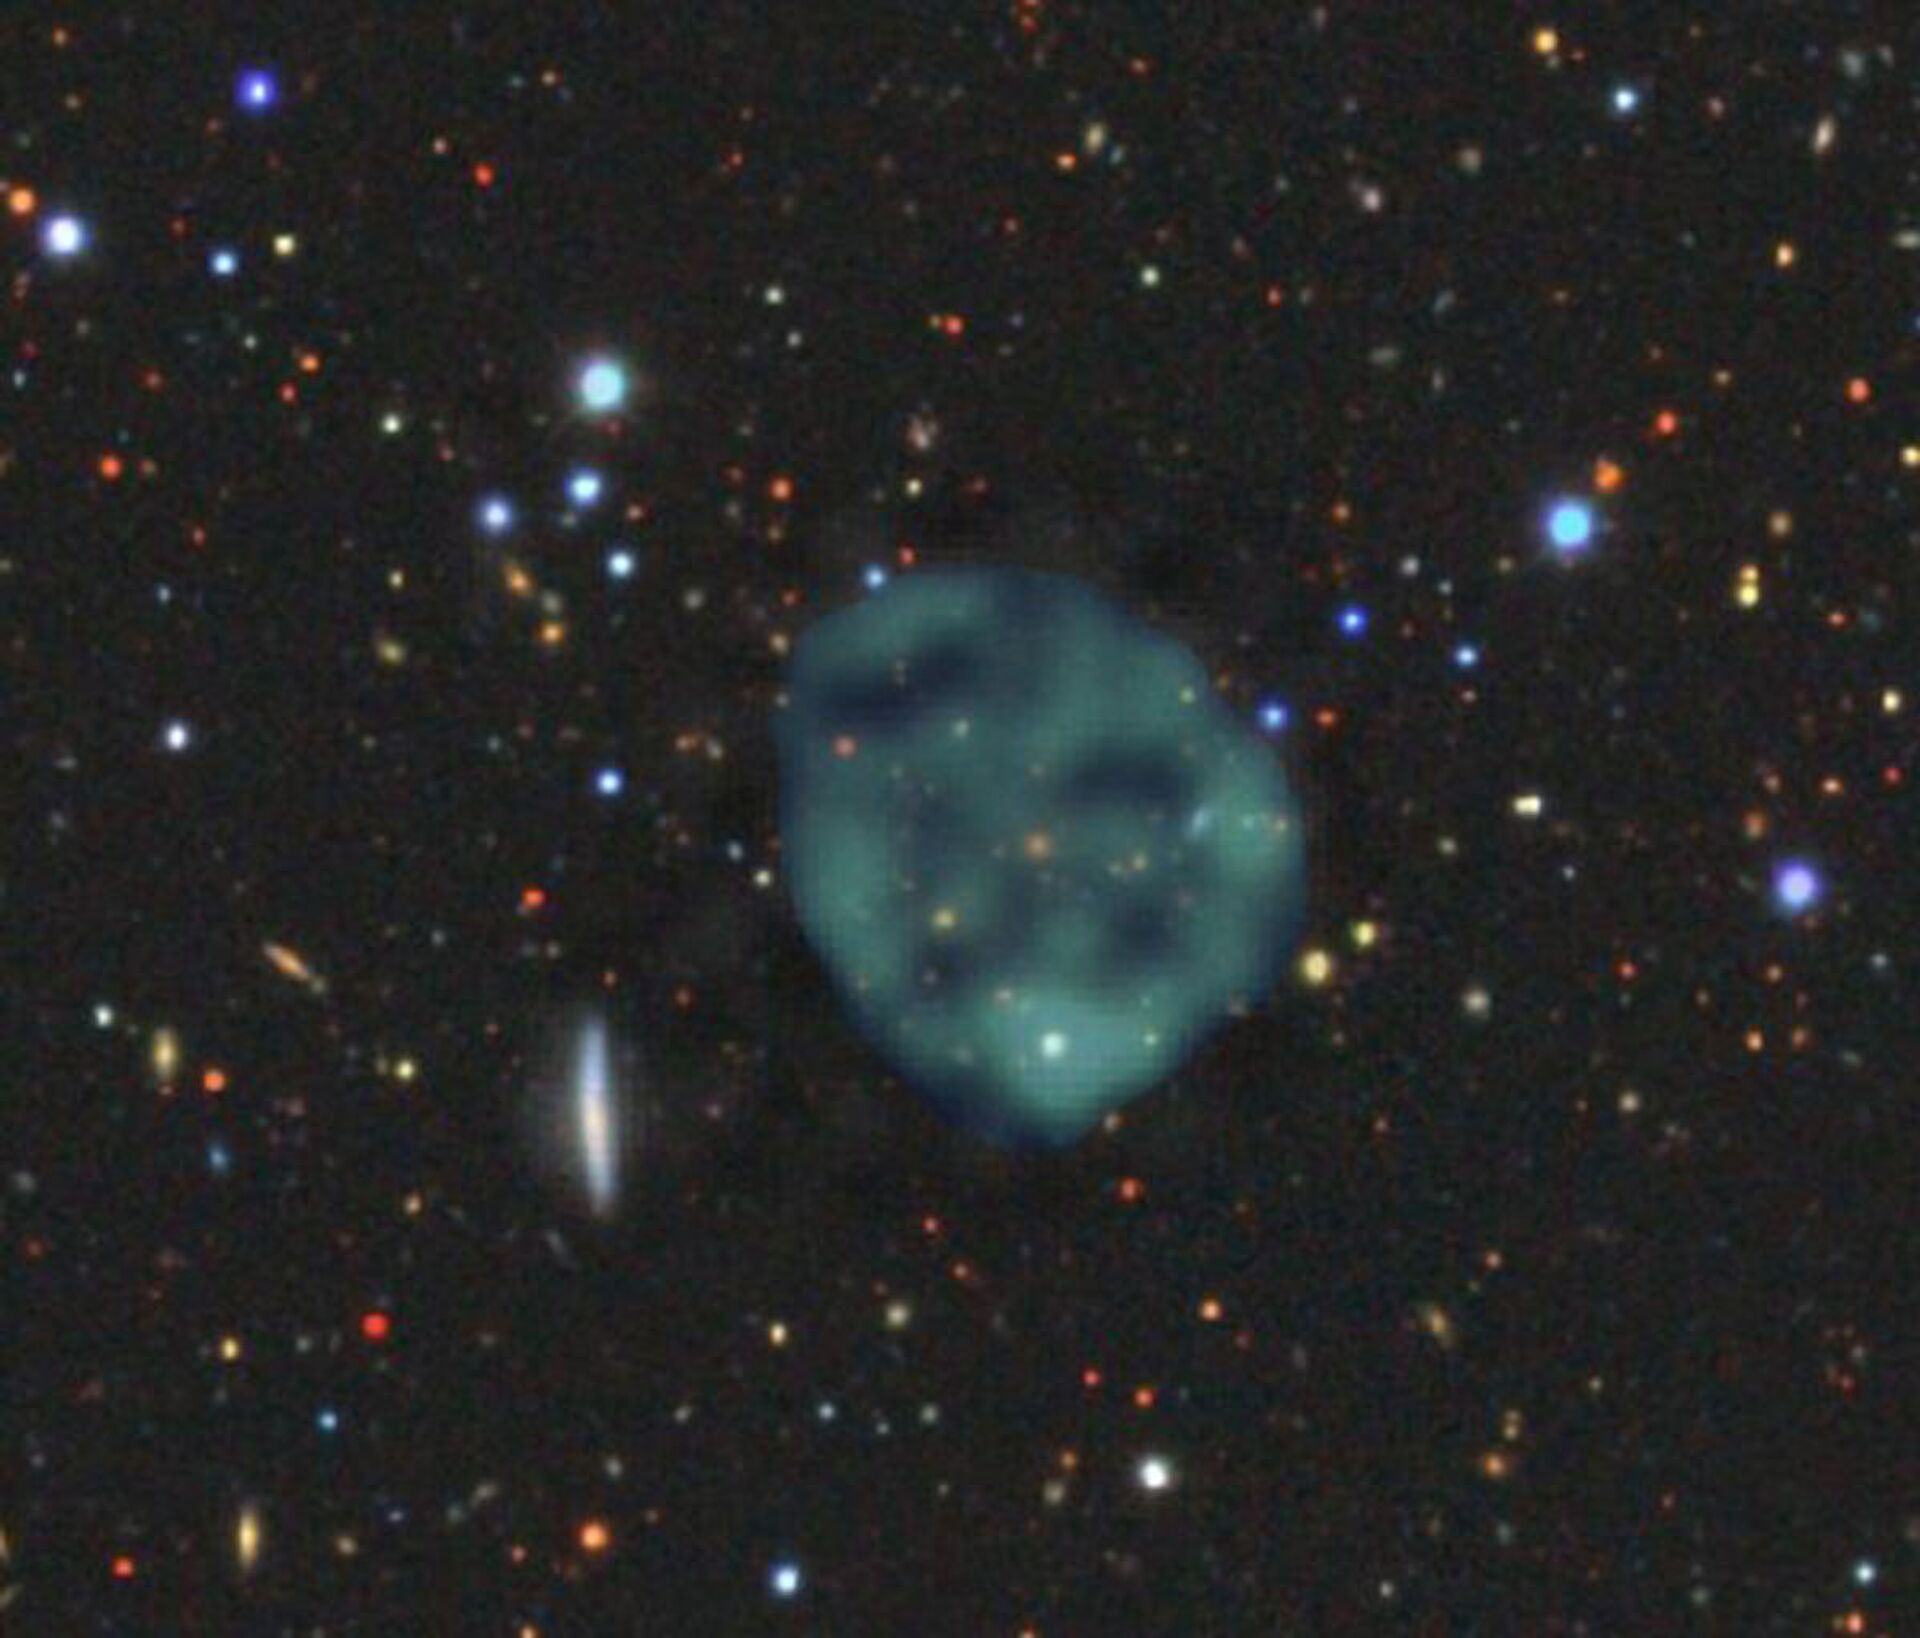 Imenso e enigmático: astrônomos descobrem 'anel fantasma' com diâmetro de 980.000 anos-luz (FOTO) - Sputnik Brasil, 1920, 30.04.2021